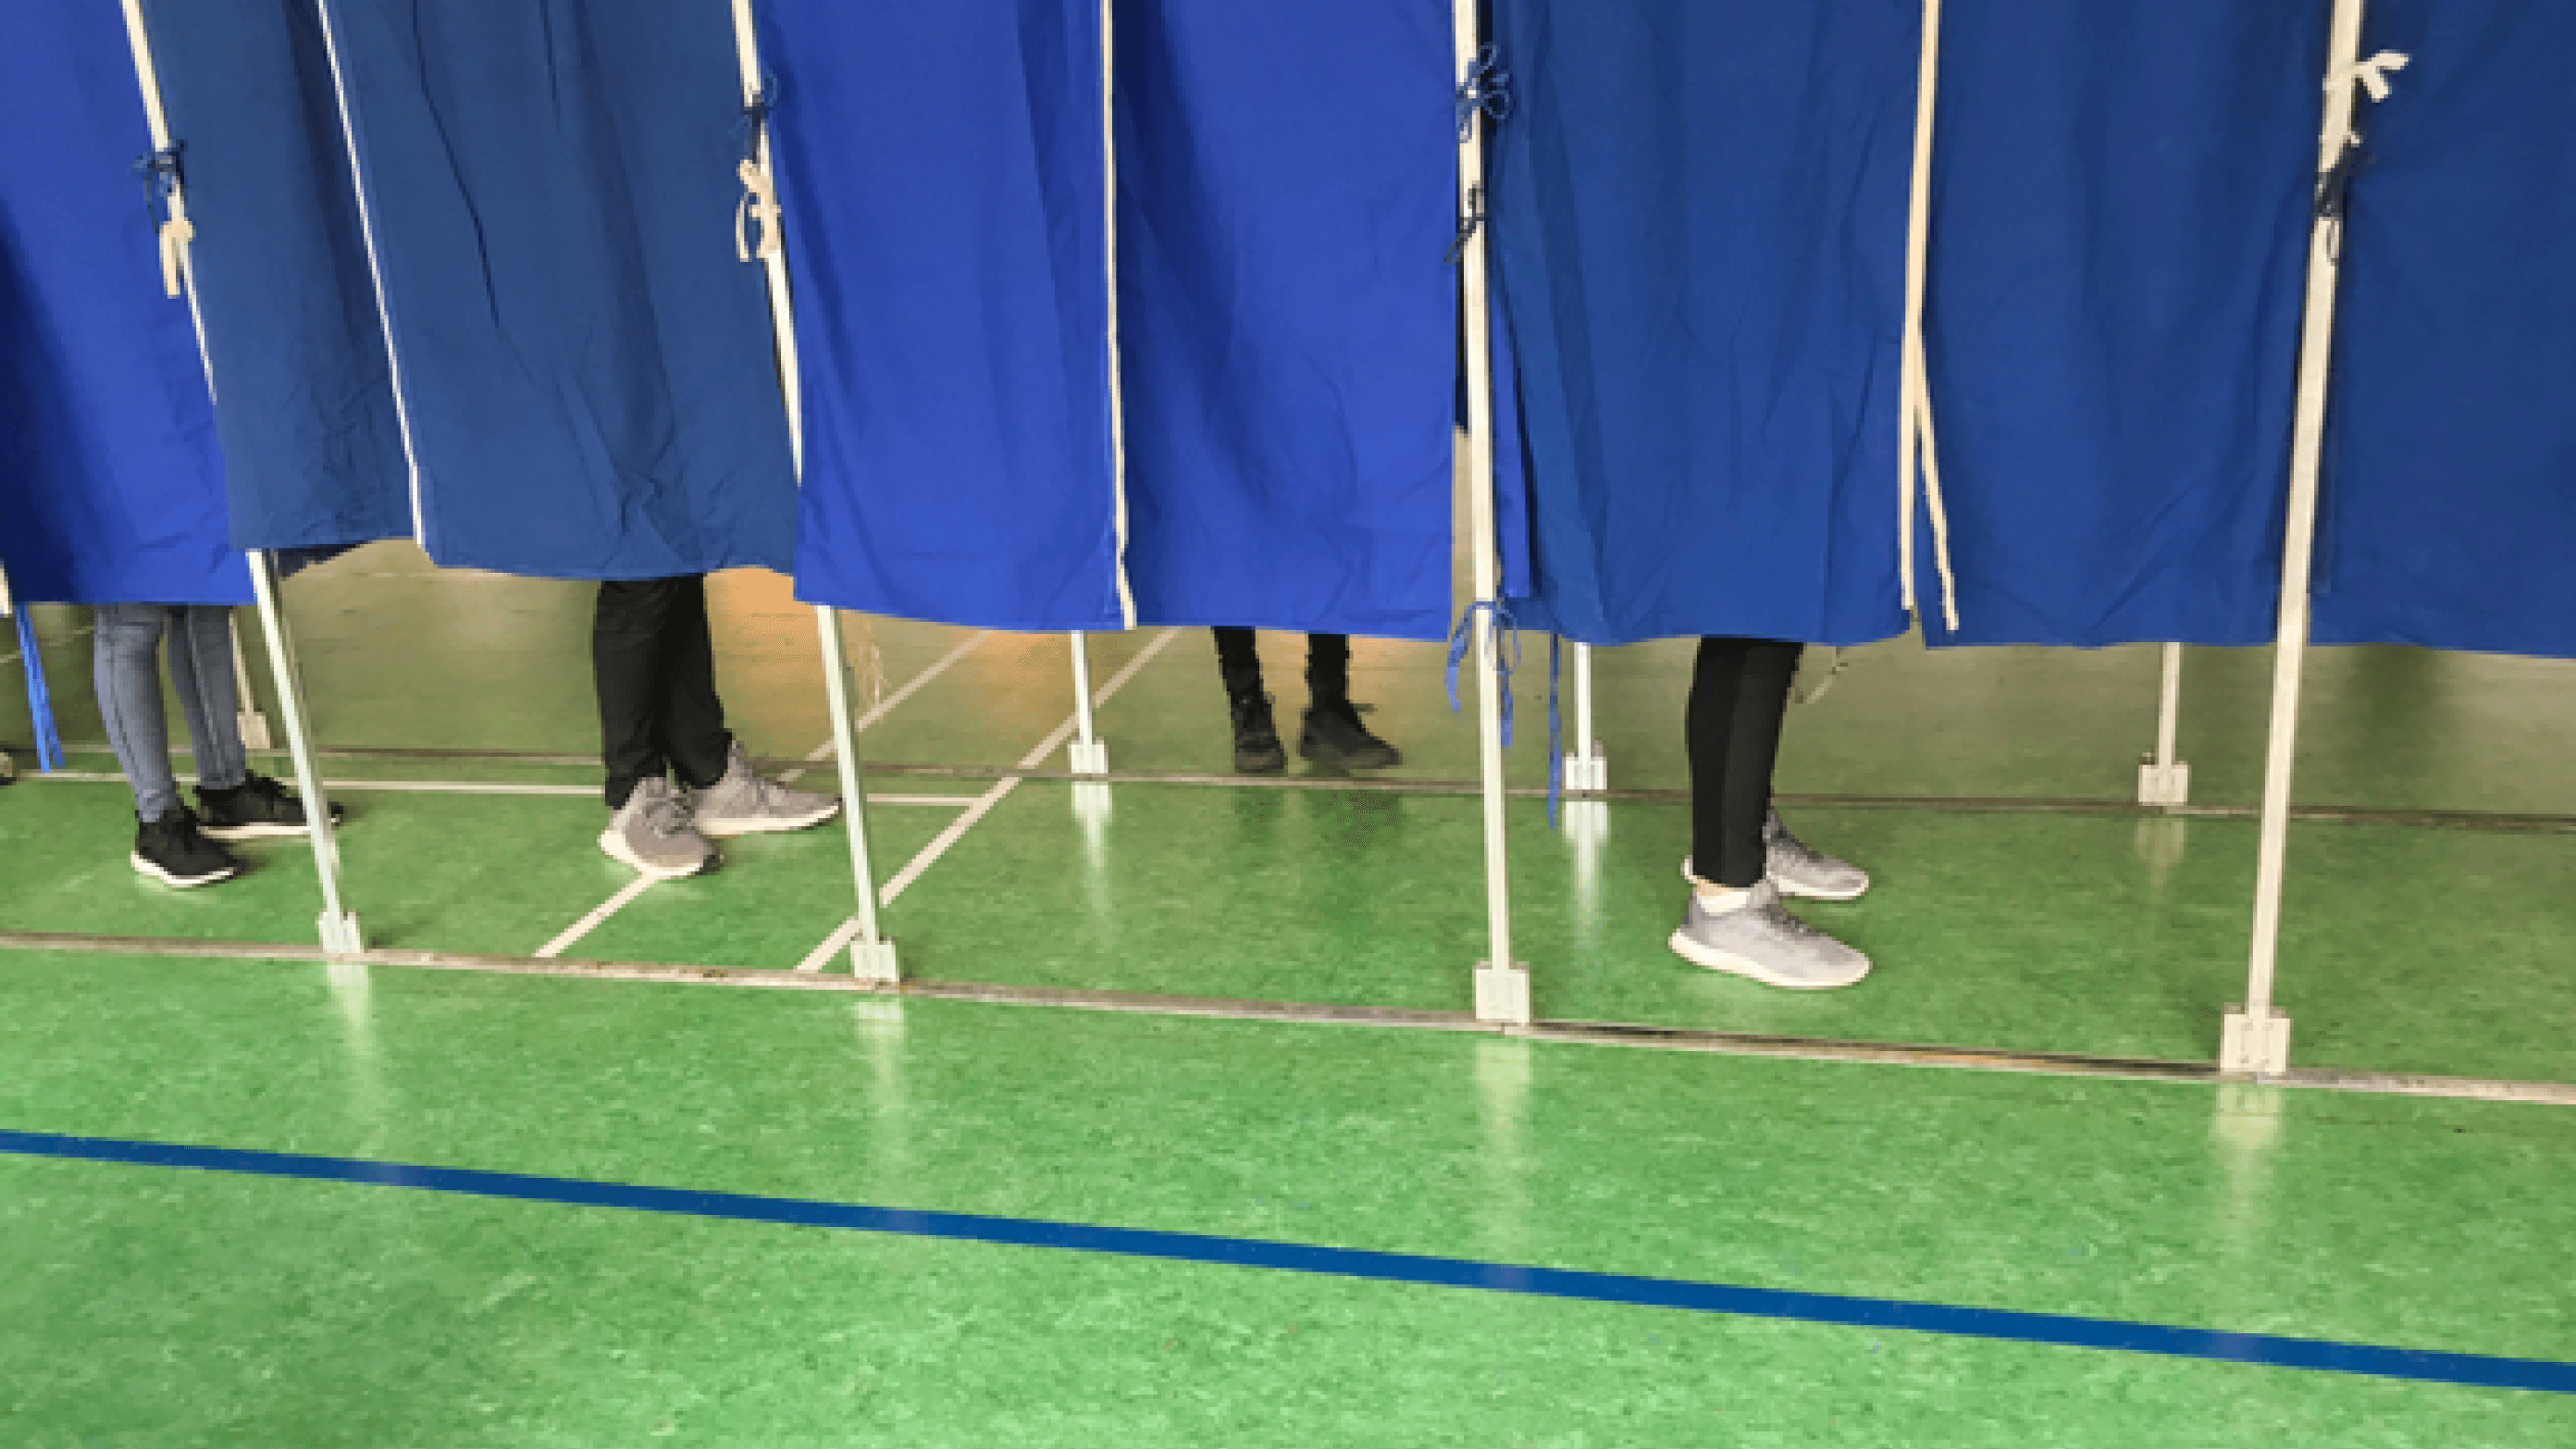 Der er godt gang i vælgervandringen blandt landets læger, der ifølge ny meningsmåling vil stemme markant anderledes ved dette valg end ved valget i 2019. Foto: Colourbox